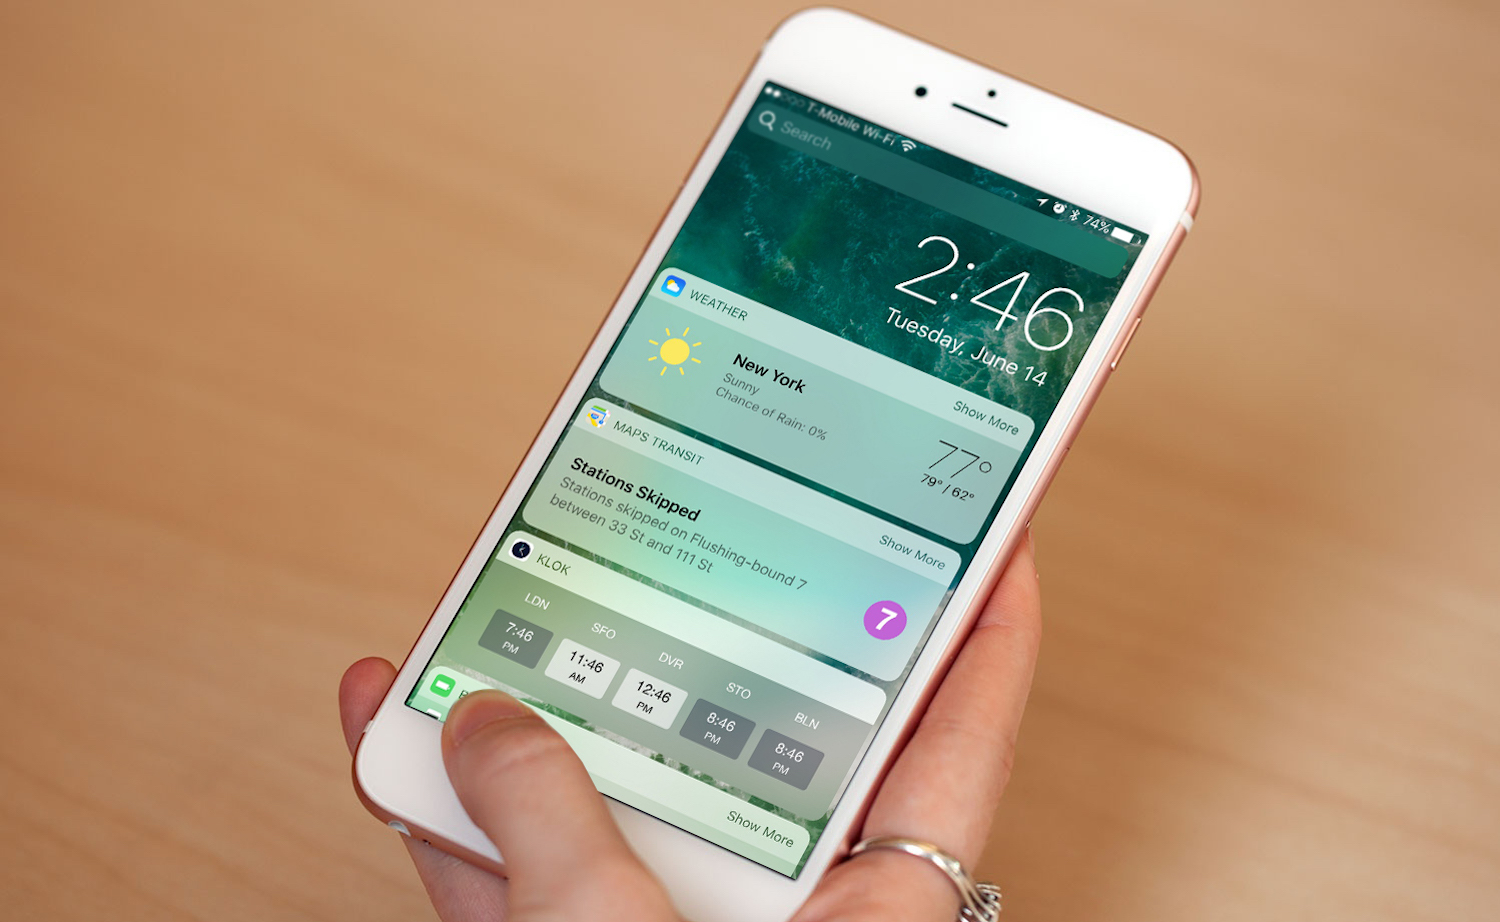 รู้จักฟีเจอร์ใหม่ใน iOS 10 แค่ยก iPhone ขึ้นมาก็ใช้งานได้ทันที!